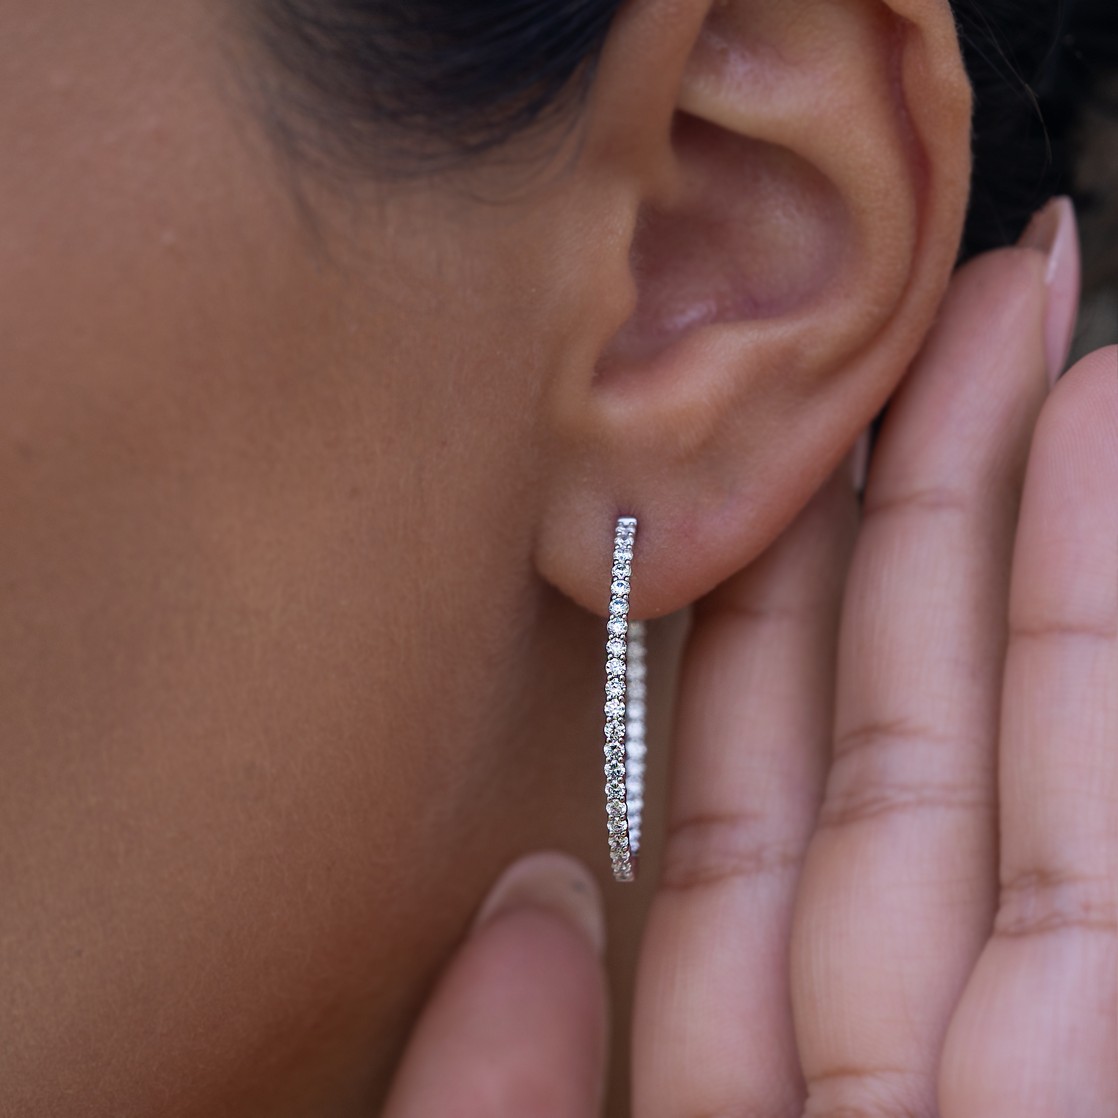 Earring Backs Medium Weight 14k White Gold (Pair)